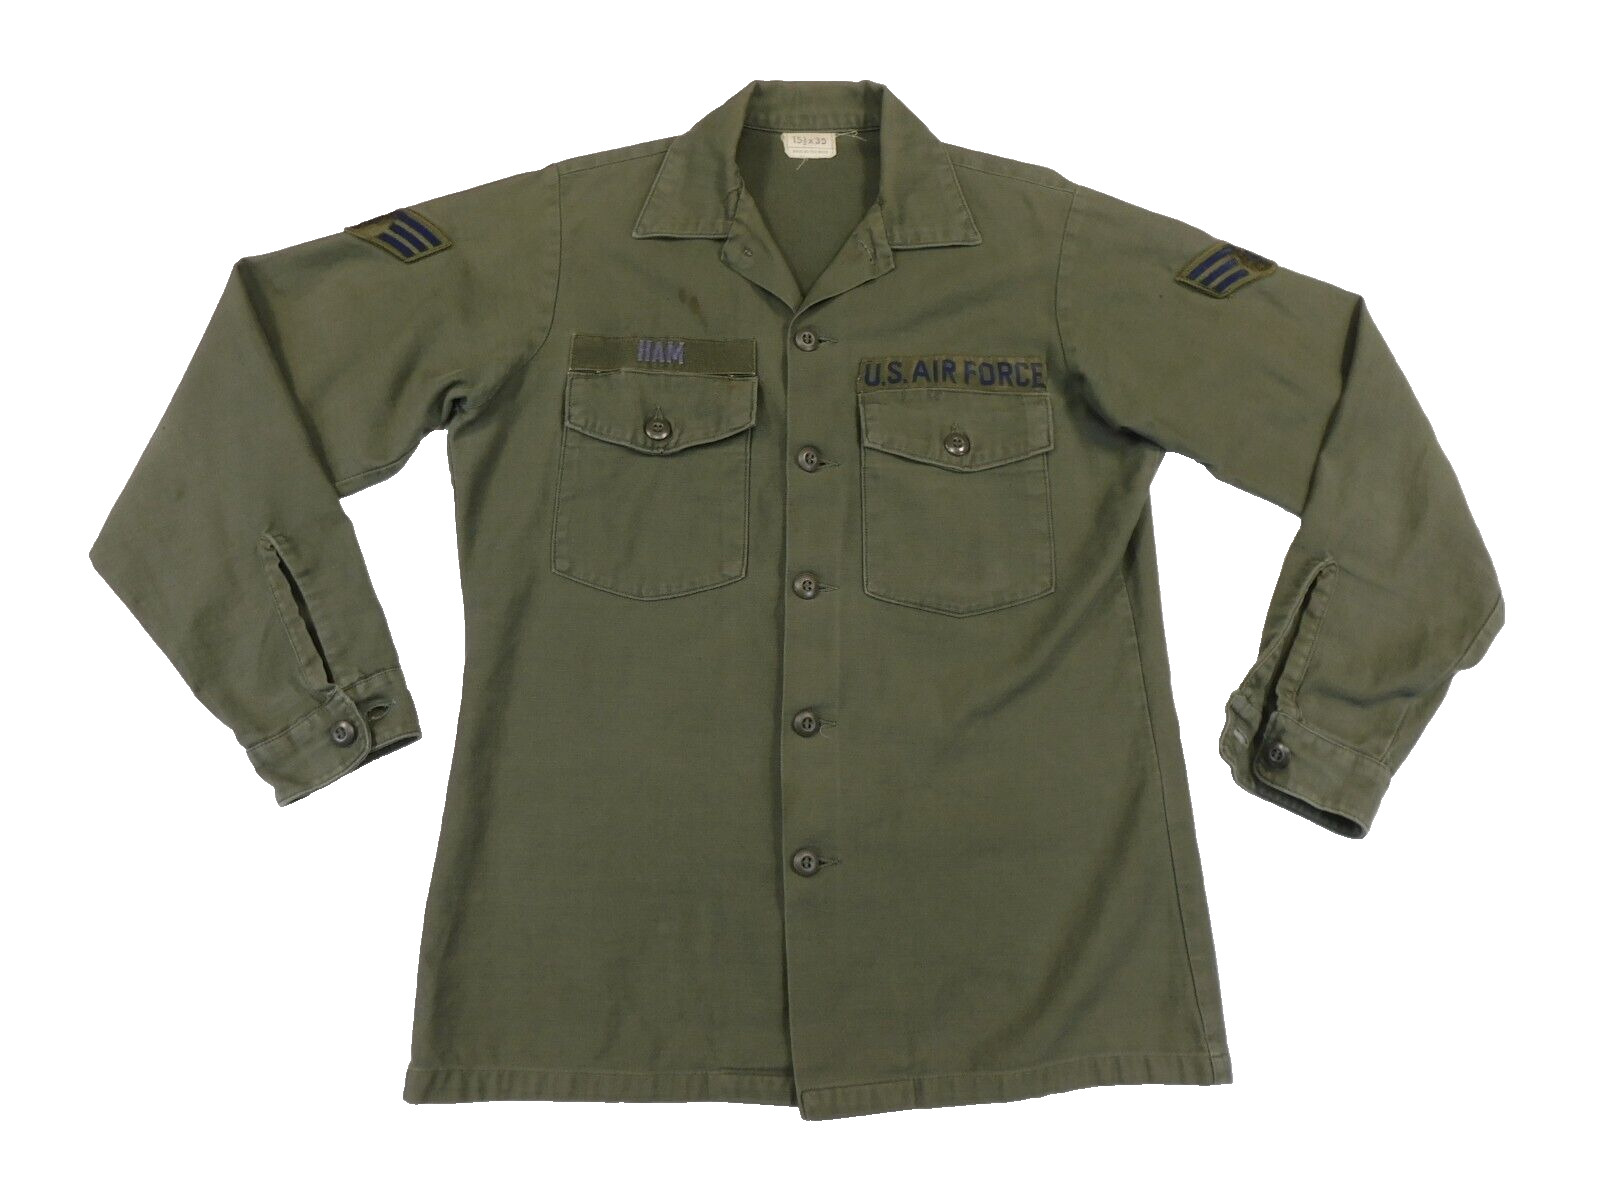 US Air Force Utility Shirt 15 1/2 x 35 Vietnam Era Uniform OG-107 Green Cotton